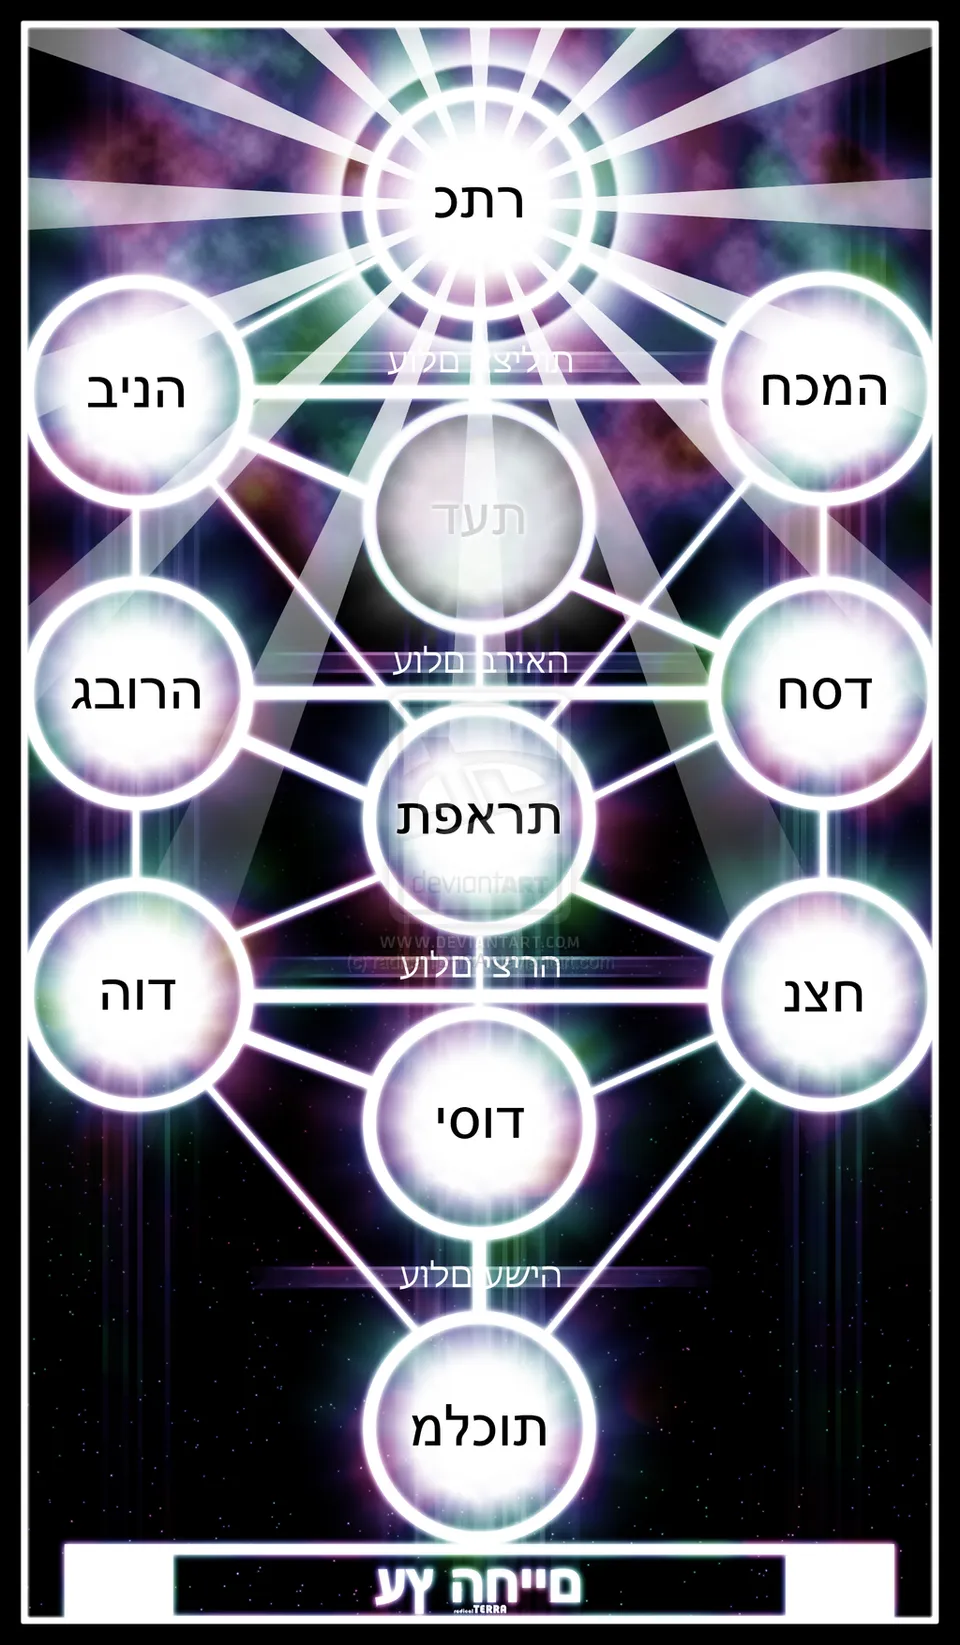 Introducción a la Cábala: Conocer a Dios mediante las 10 Sefirot y las 22  letras del alfabeto hebreo | HuffPost Voices